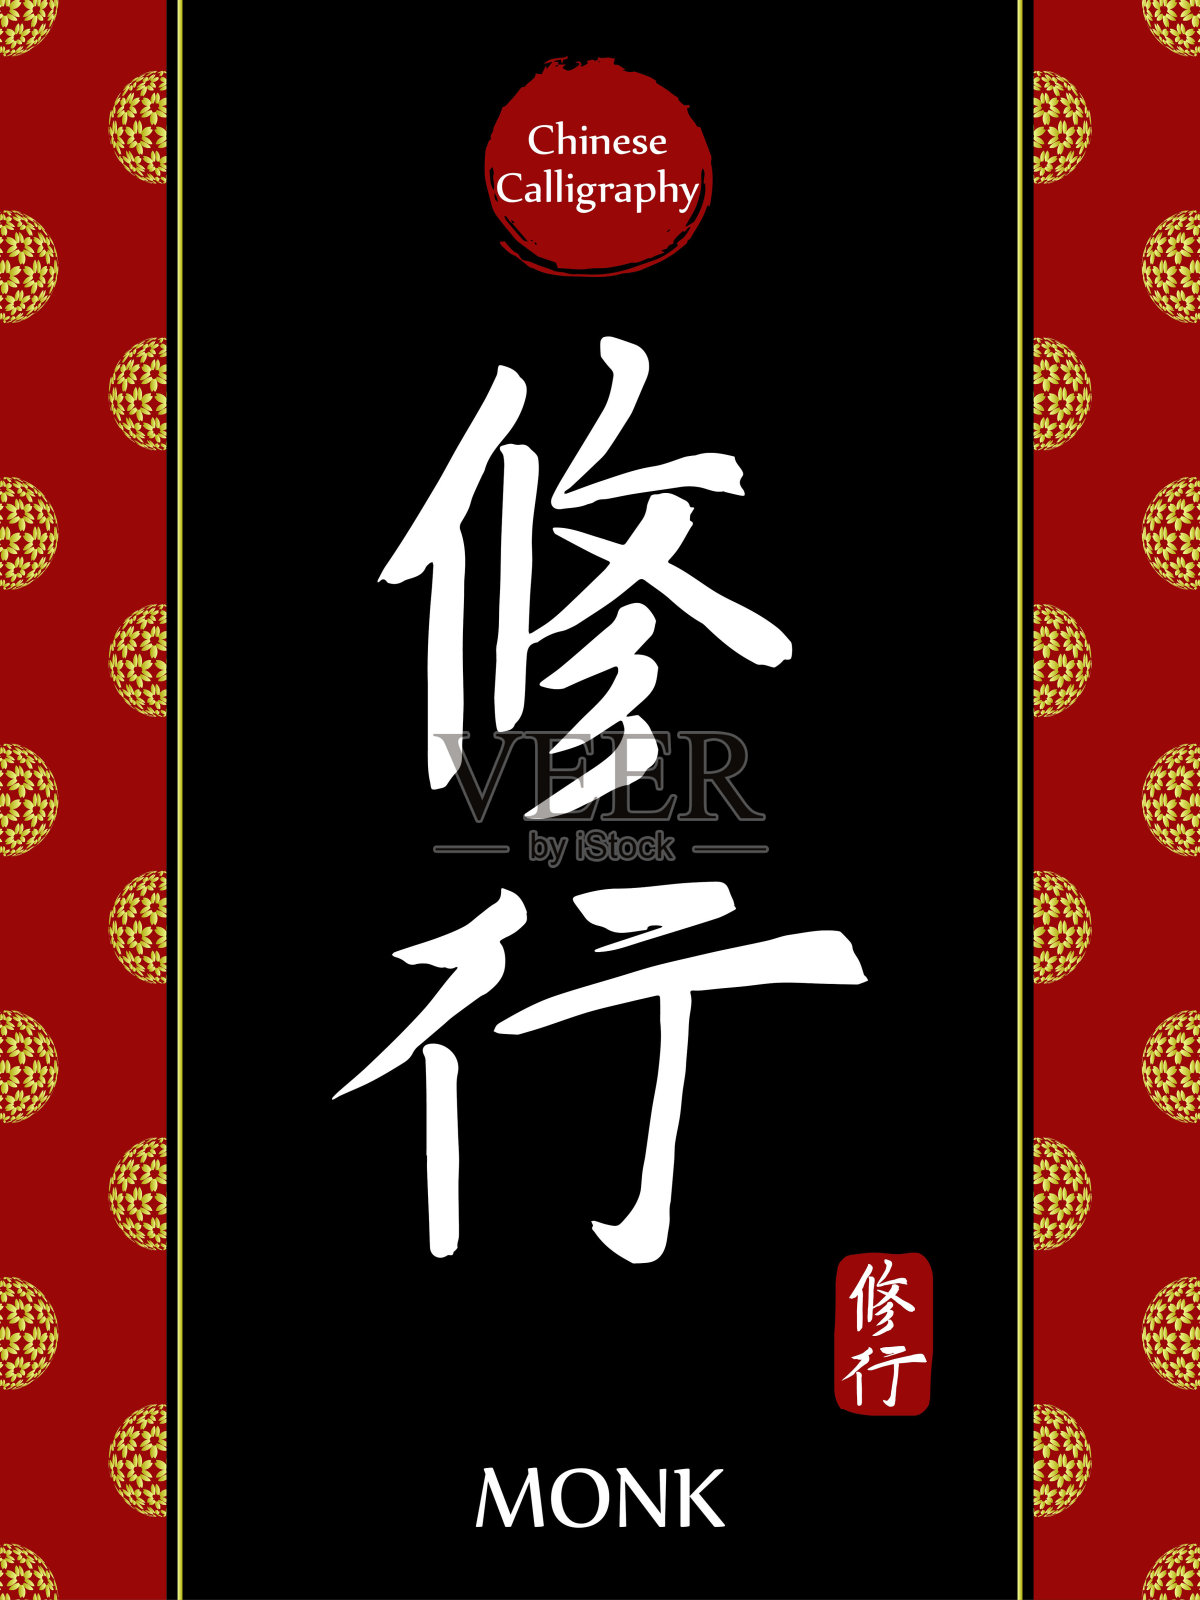 中国书法象形文字翻译:和尚。亚洲金花球农历新年图案。向量中国符号在黑色背景。手绘图画文字。毛笔书法插画图片素材